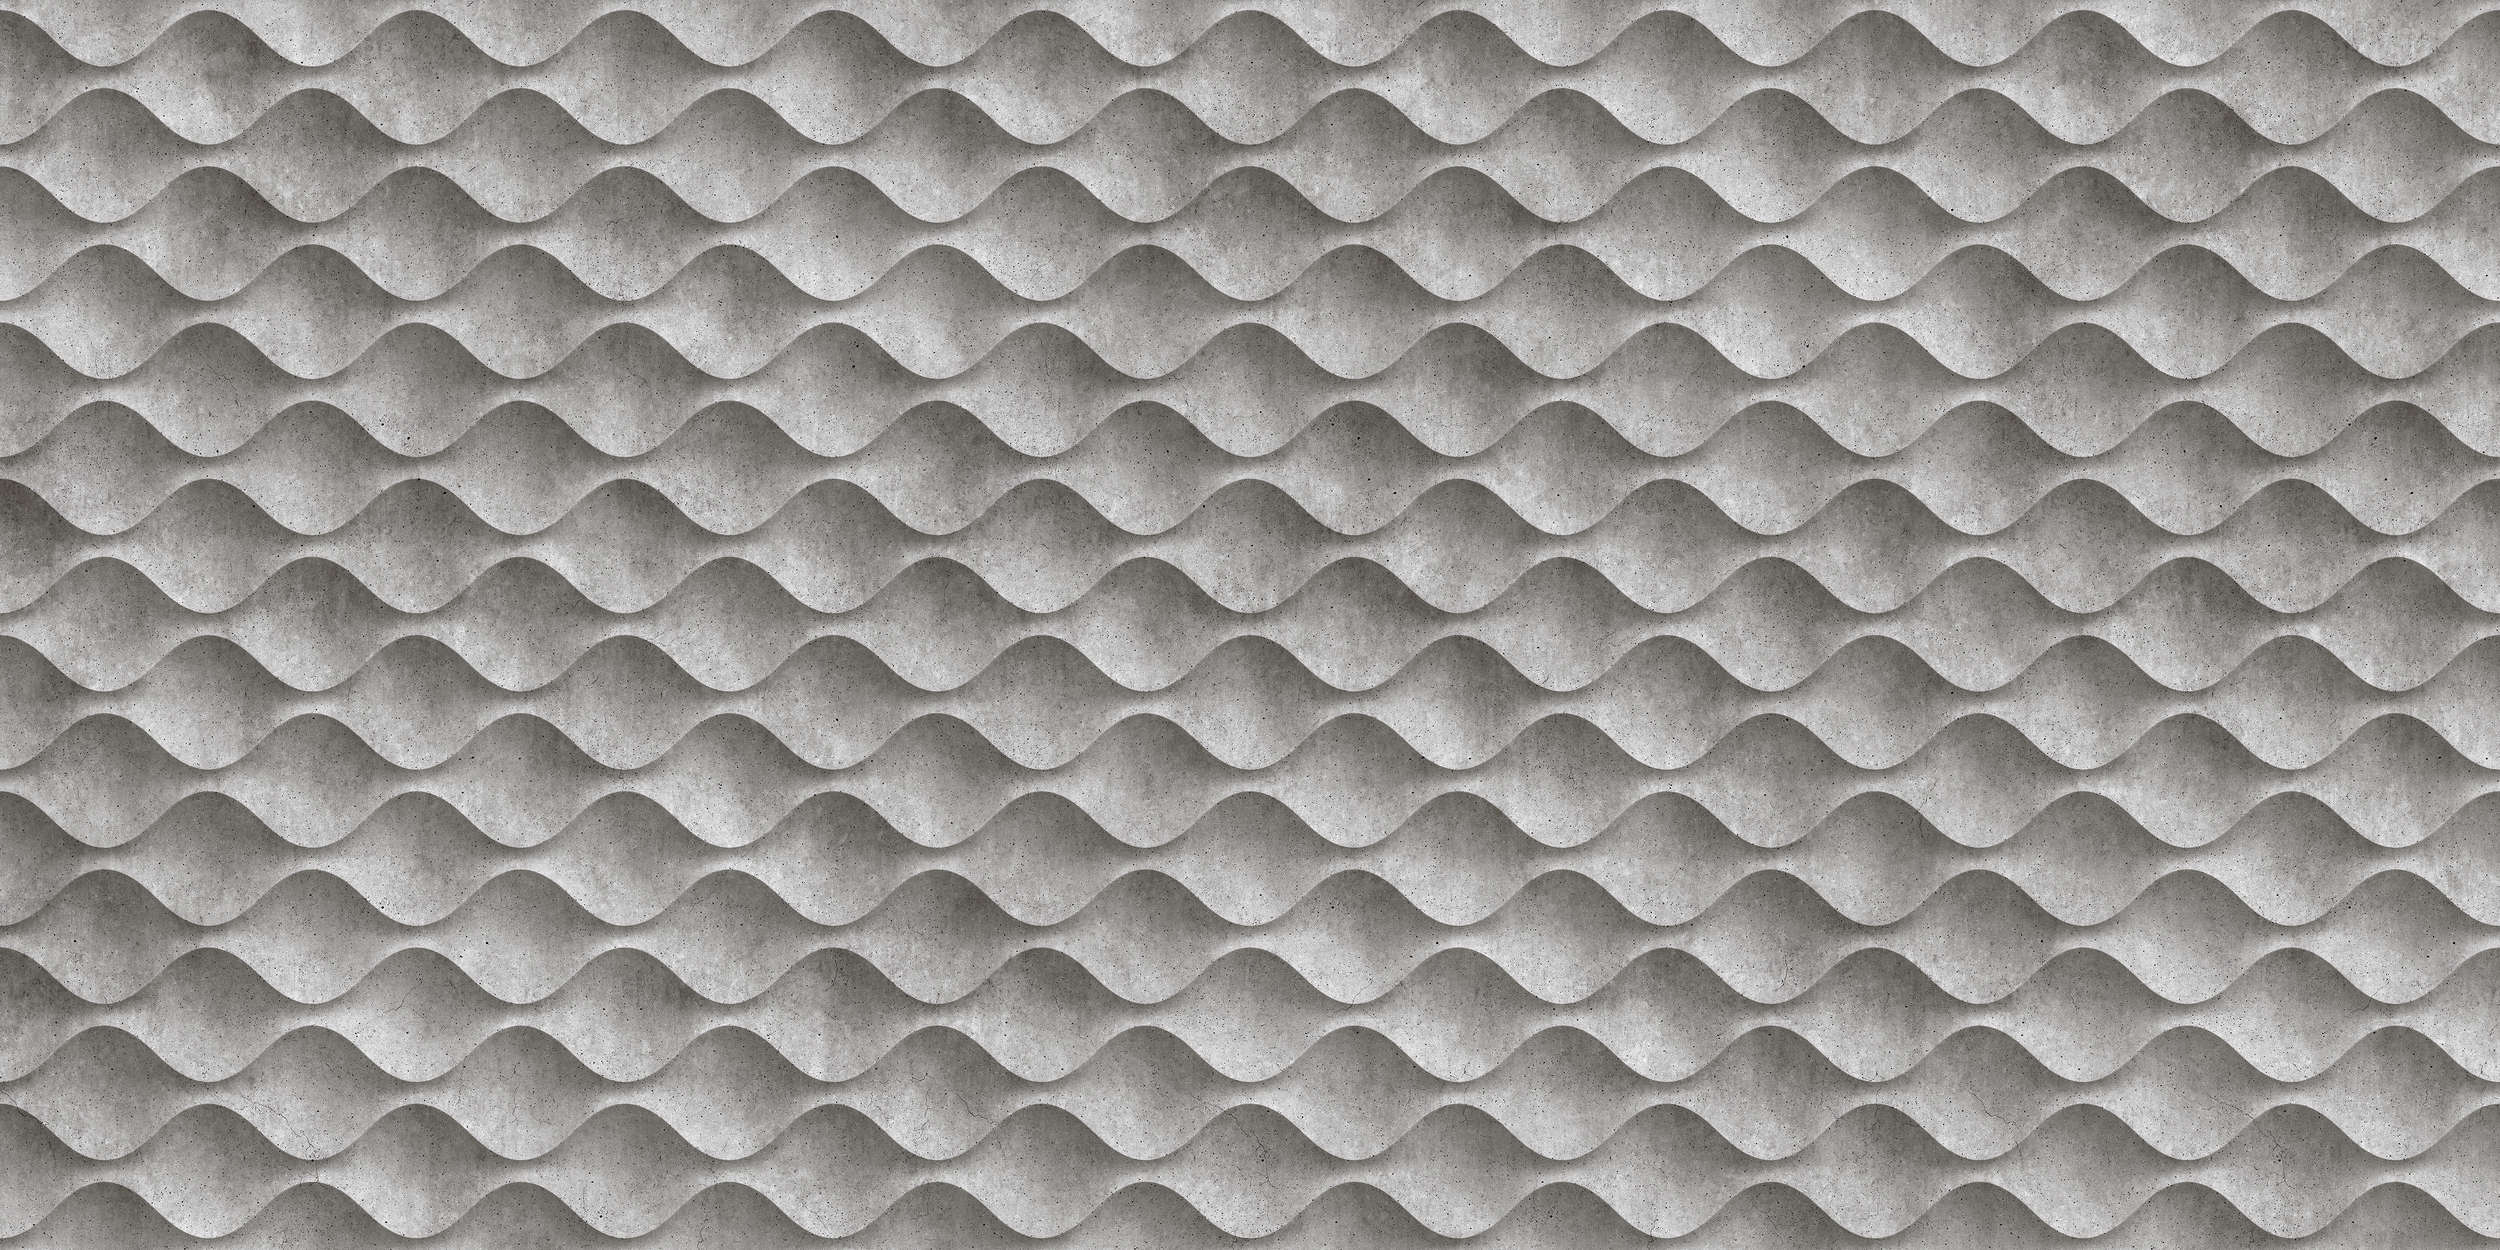             Concrete 1 - Papel Pintado Ondas de Hormigón 3D - Gris, Negro | Liso Perlado
        